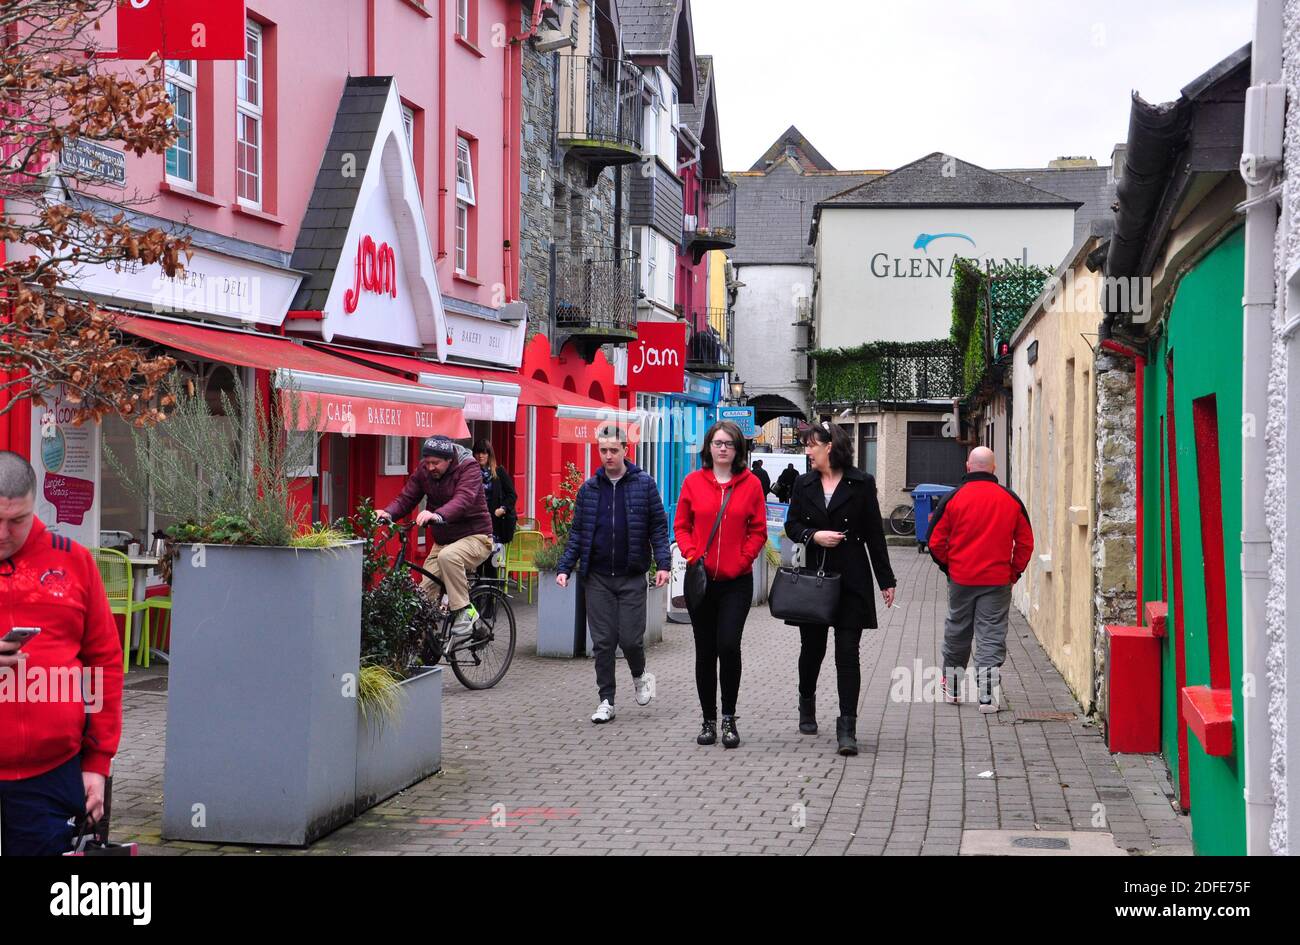 Bunt bemalte Cafés und Geschäfte in einer belebten, interessanten Seitenstraße von Killarny, County Kerry, Irland. Stockfoto